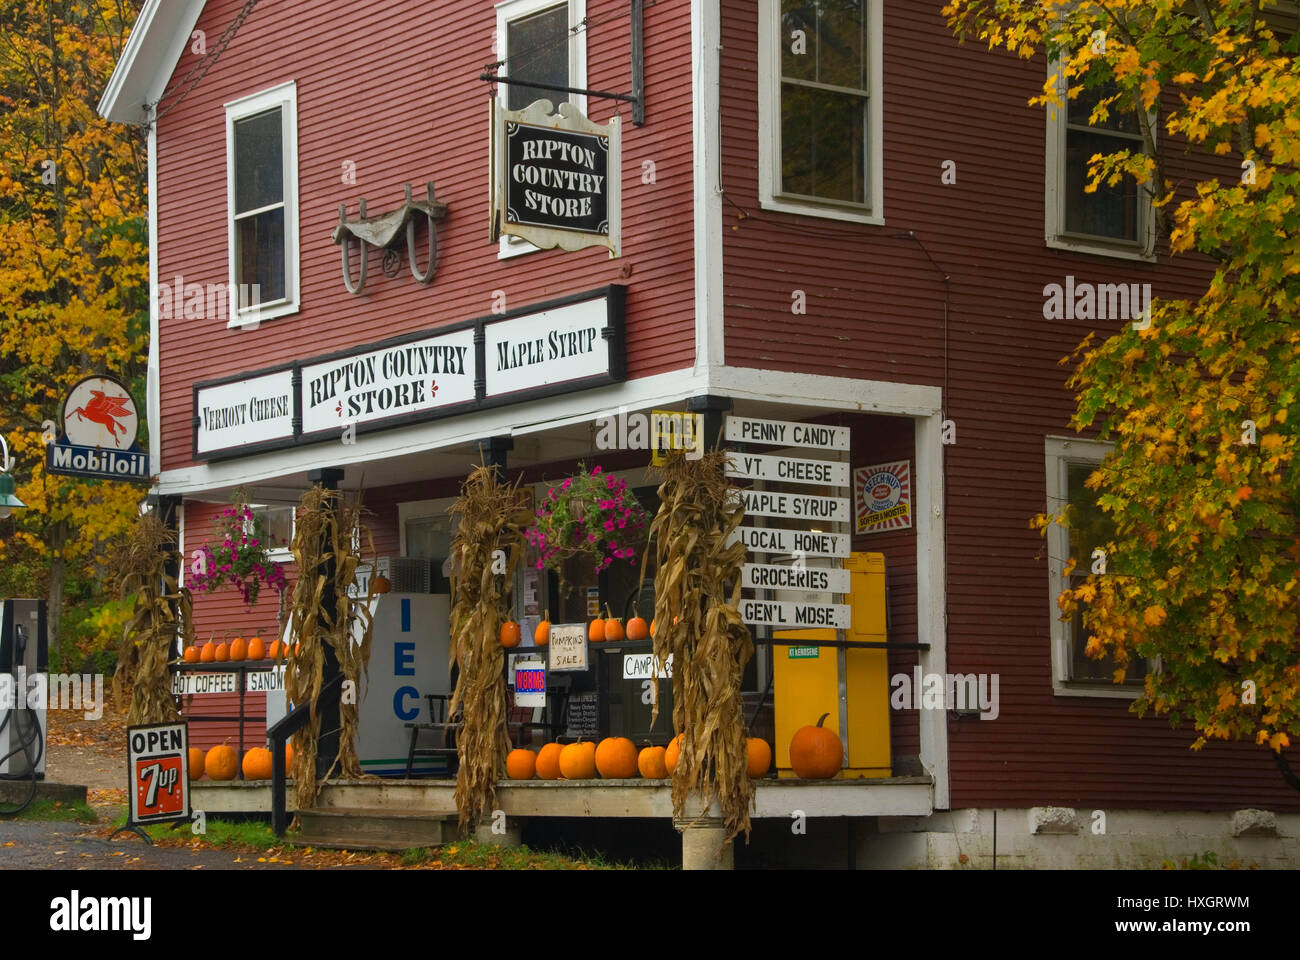 Ripton Country Store, Ripton, Vermont Stock Photo